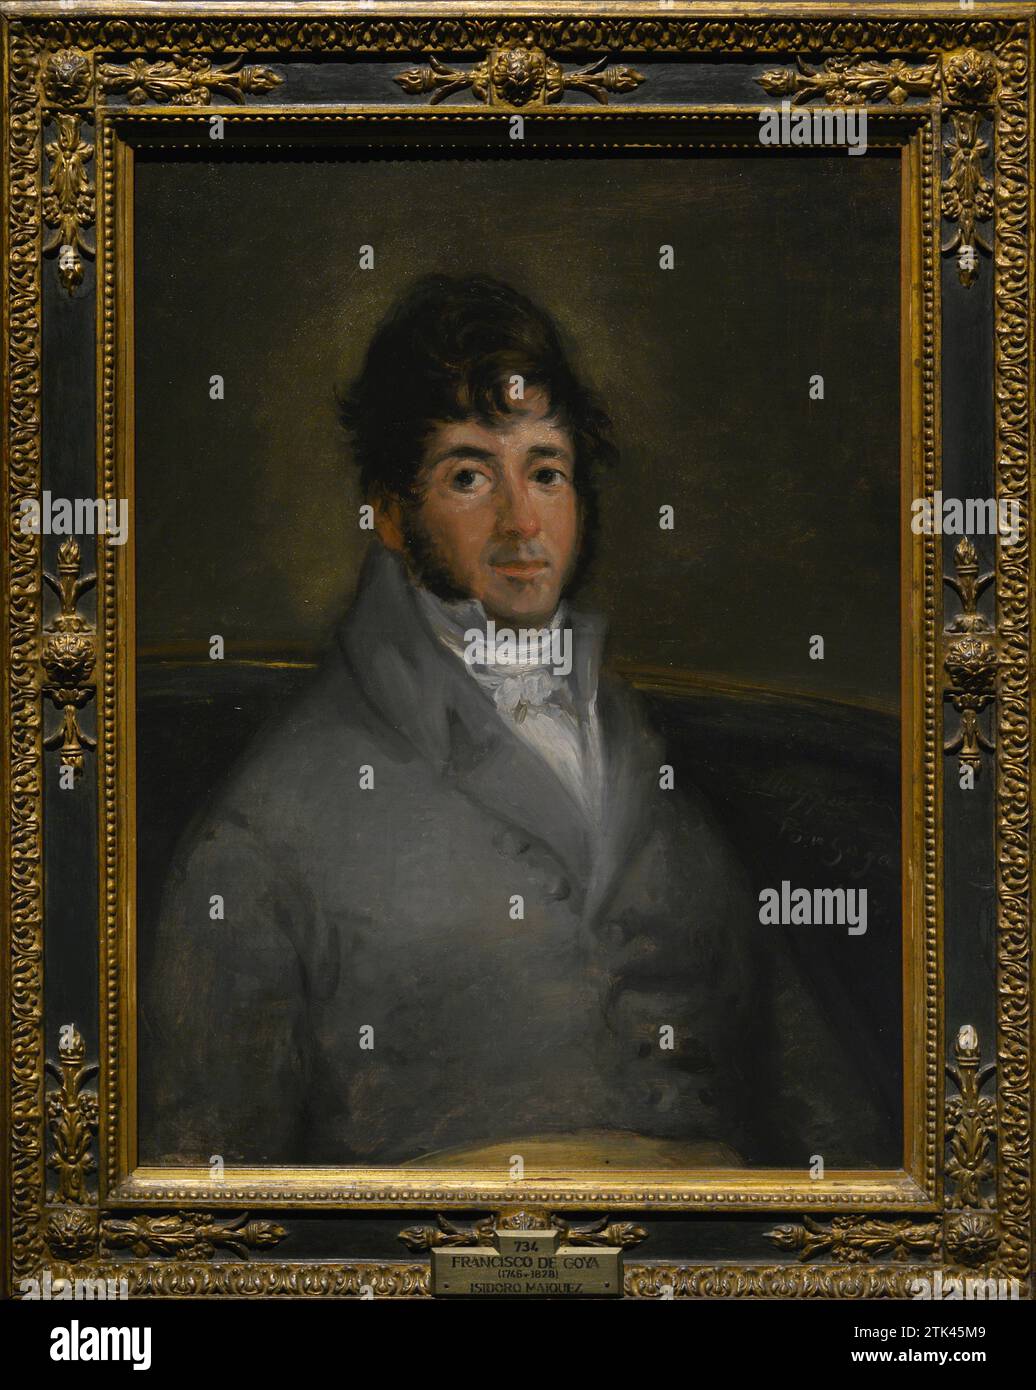 Isidoro Máiquez (1768-1820). Attore spagnolo. L'attore Isidoro Máiquez, 1807. Ritratto di Francisco de Goya y Lucientes (1746-1828). Olio su tela, 72 x 59 cm. Museo del Prado. Madrid. Spagna. Foto Stock